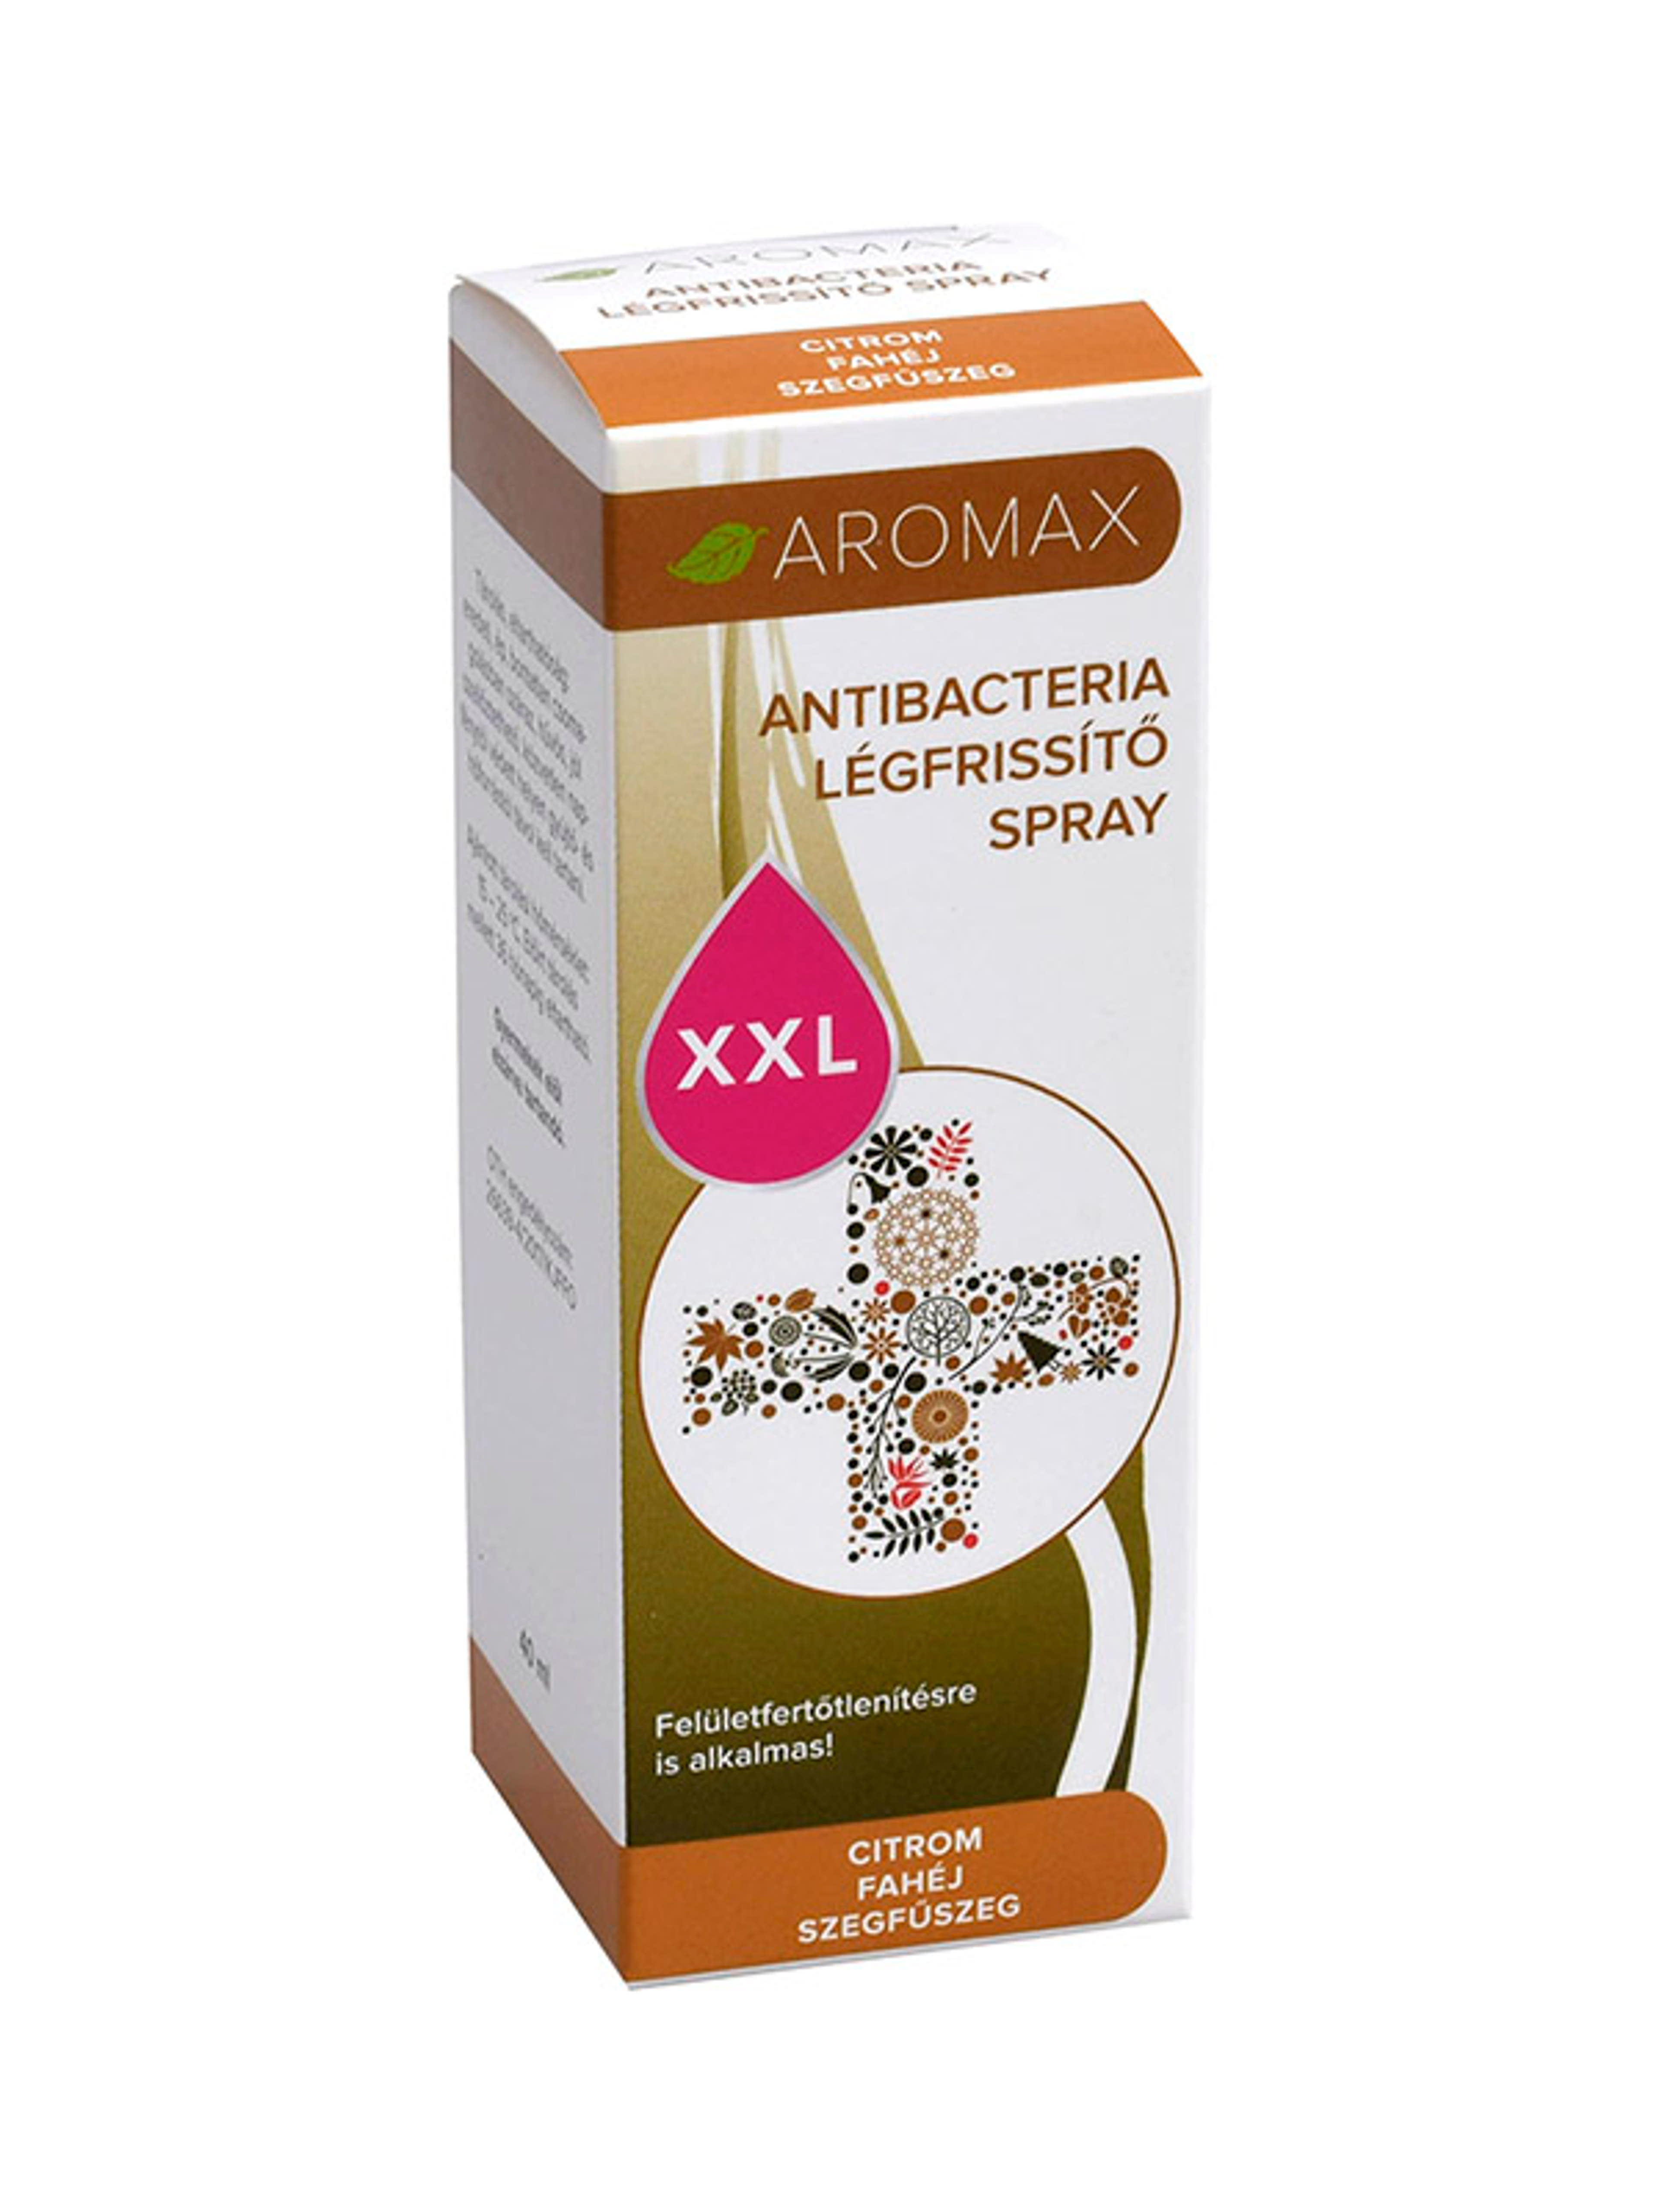 Aromax antibakteriális spray citrom-fahéj-szegfűszeg xxl - 40 ml